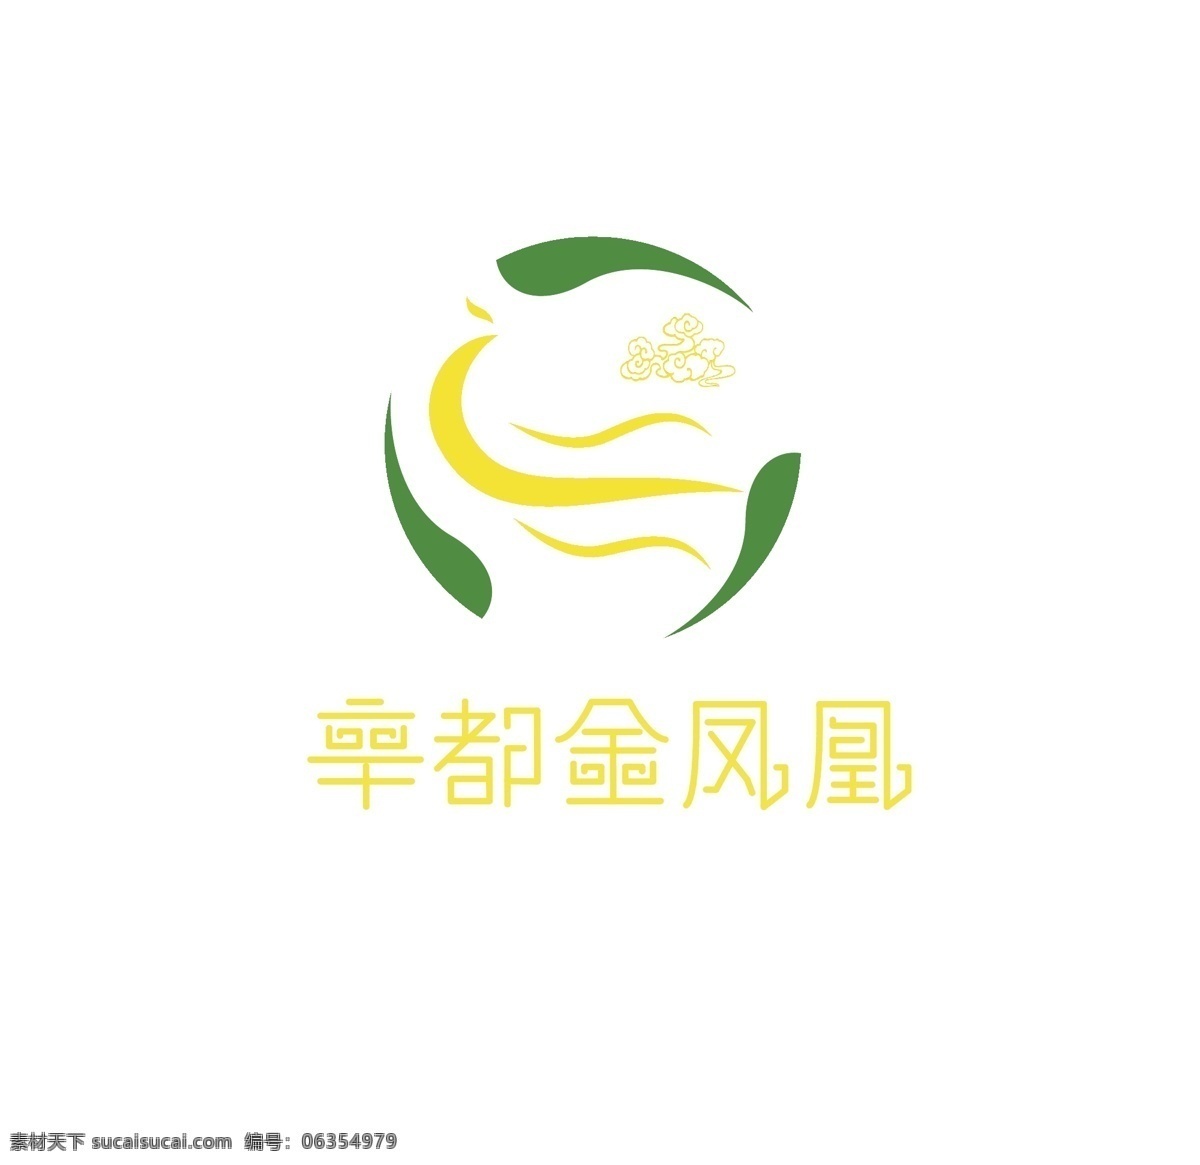 金凤凰 ailogo 香油 商标 logo 矢量素材 原创